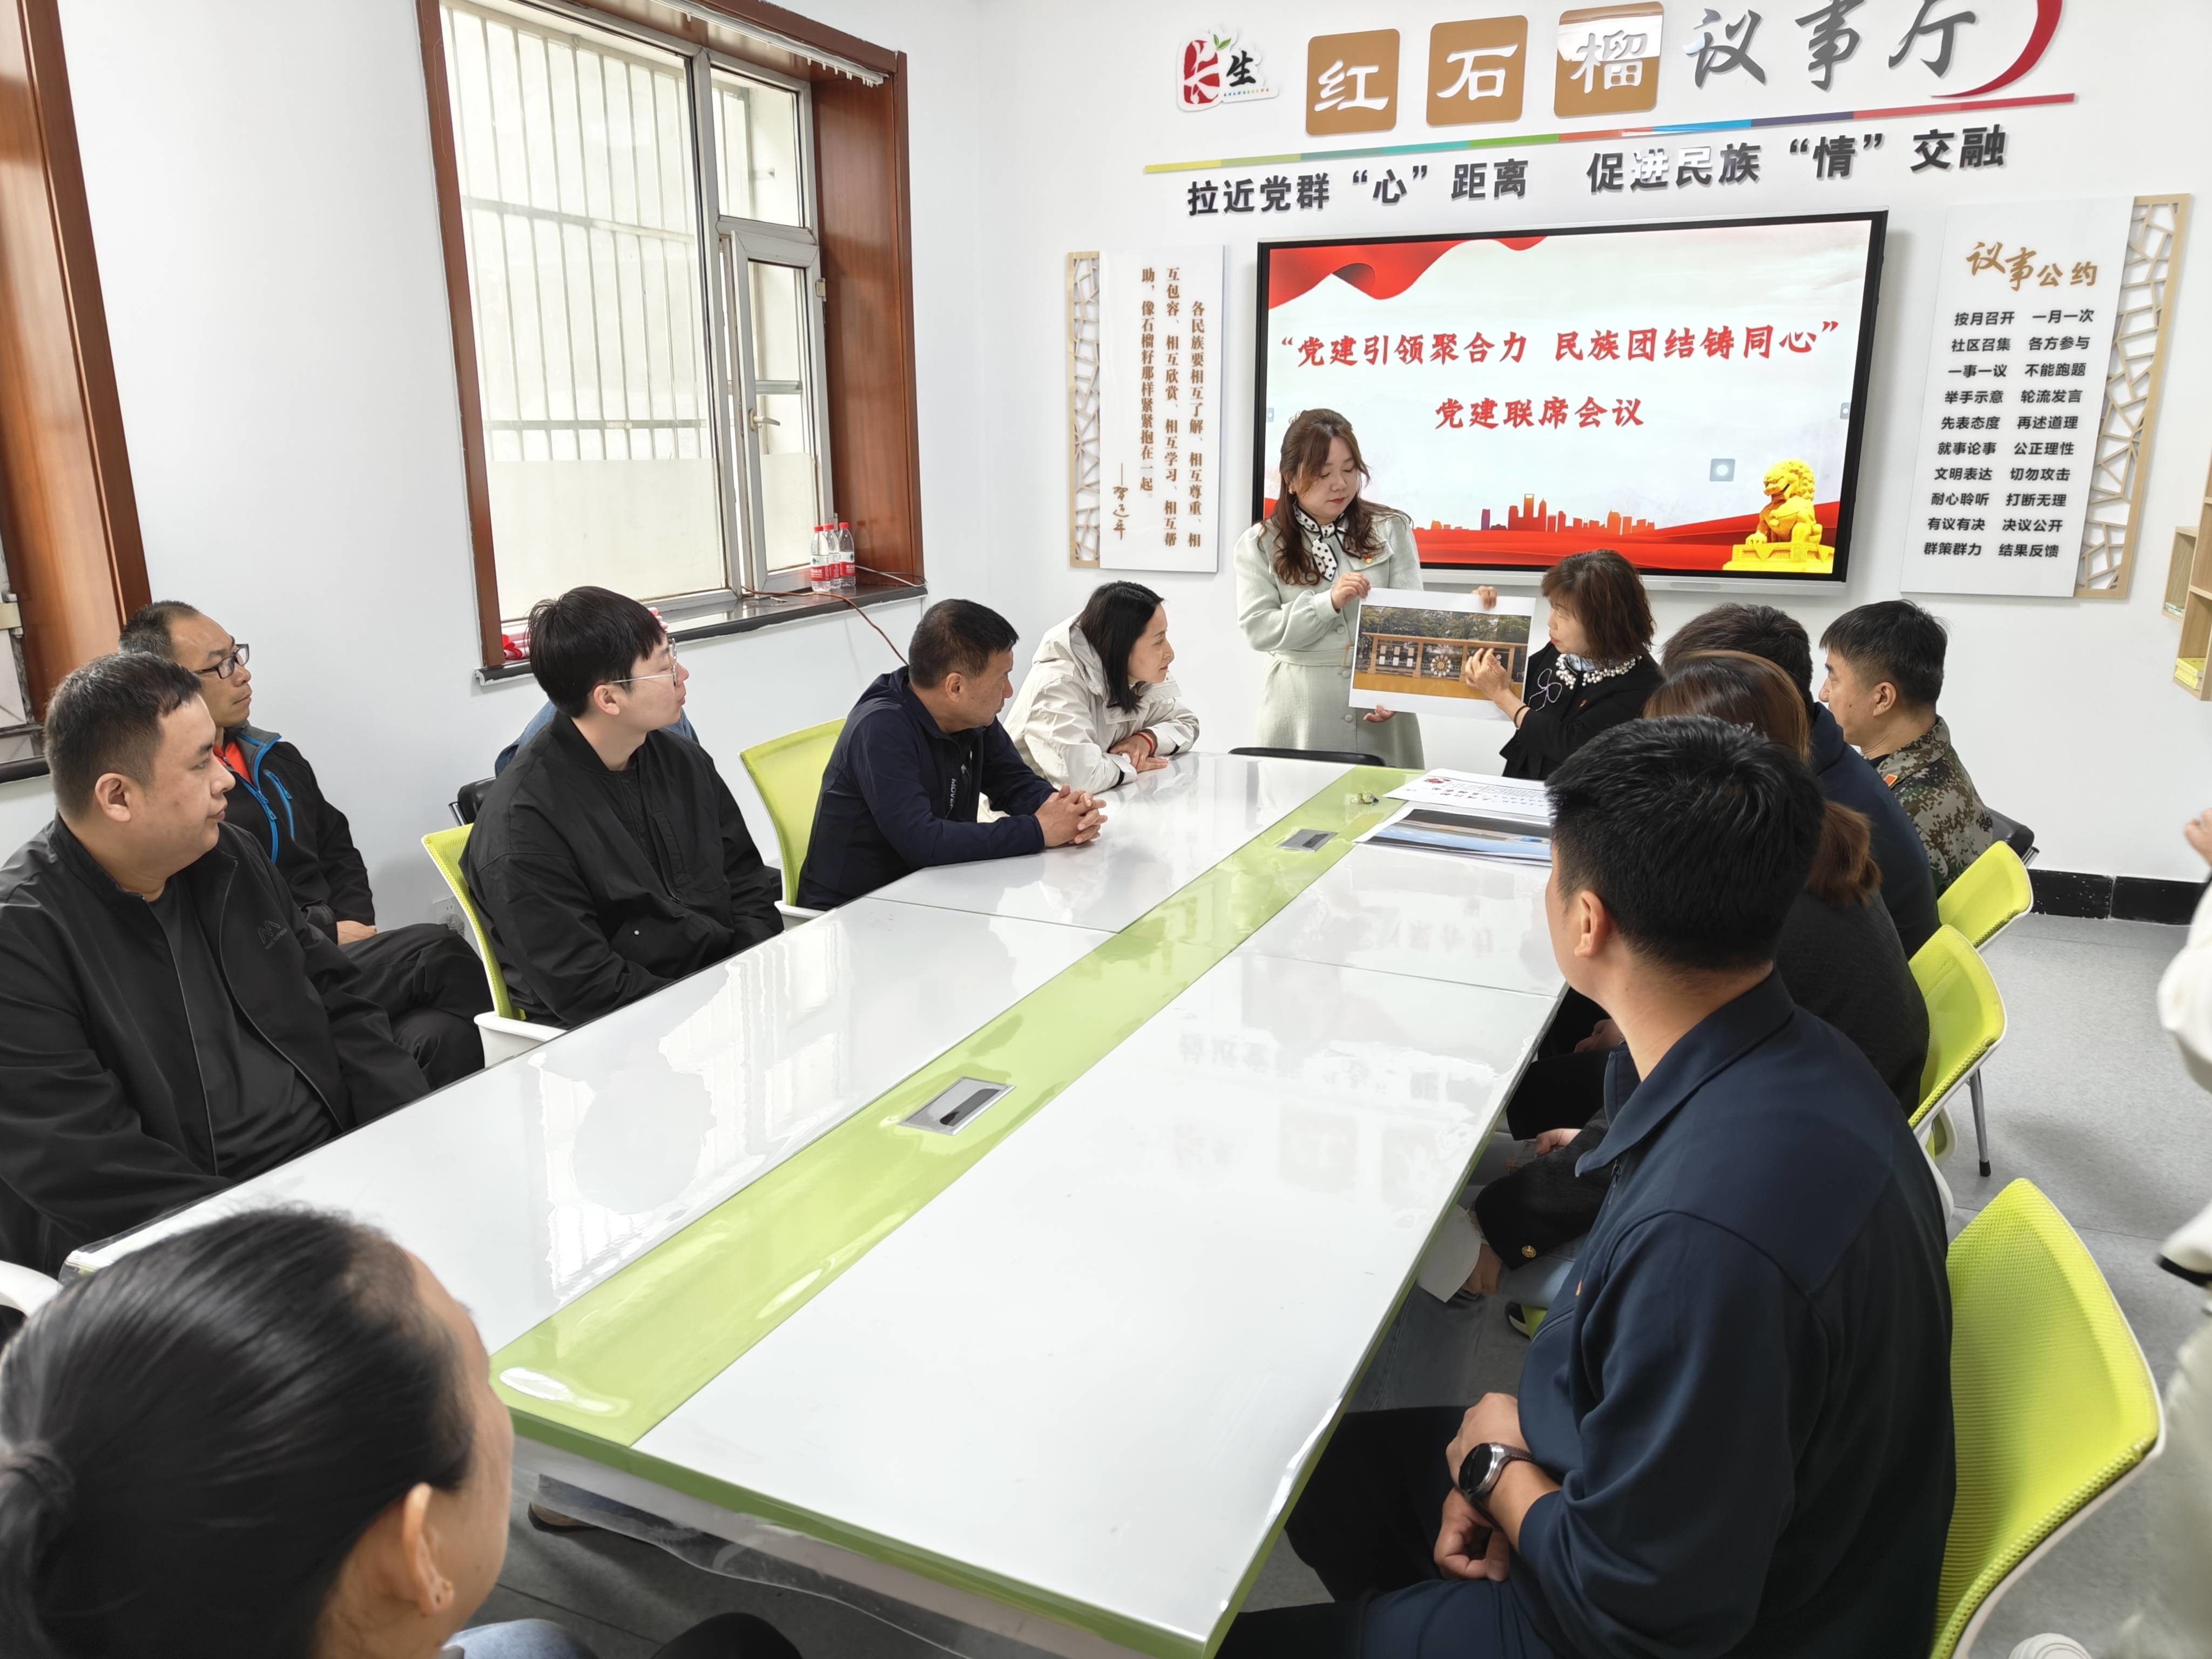 铸牢中华民族共同体意识 延吉市国动办开展系列主题活动